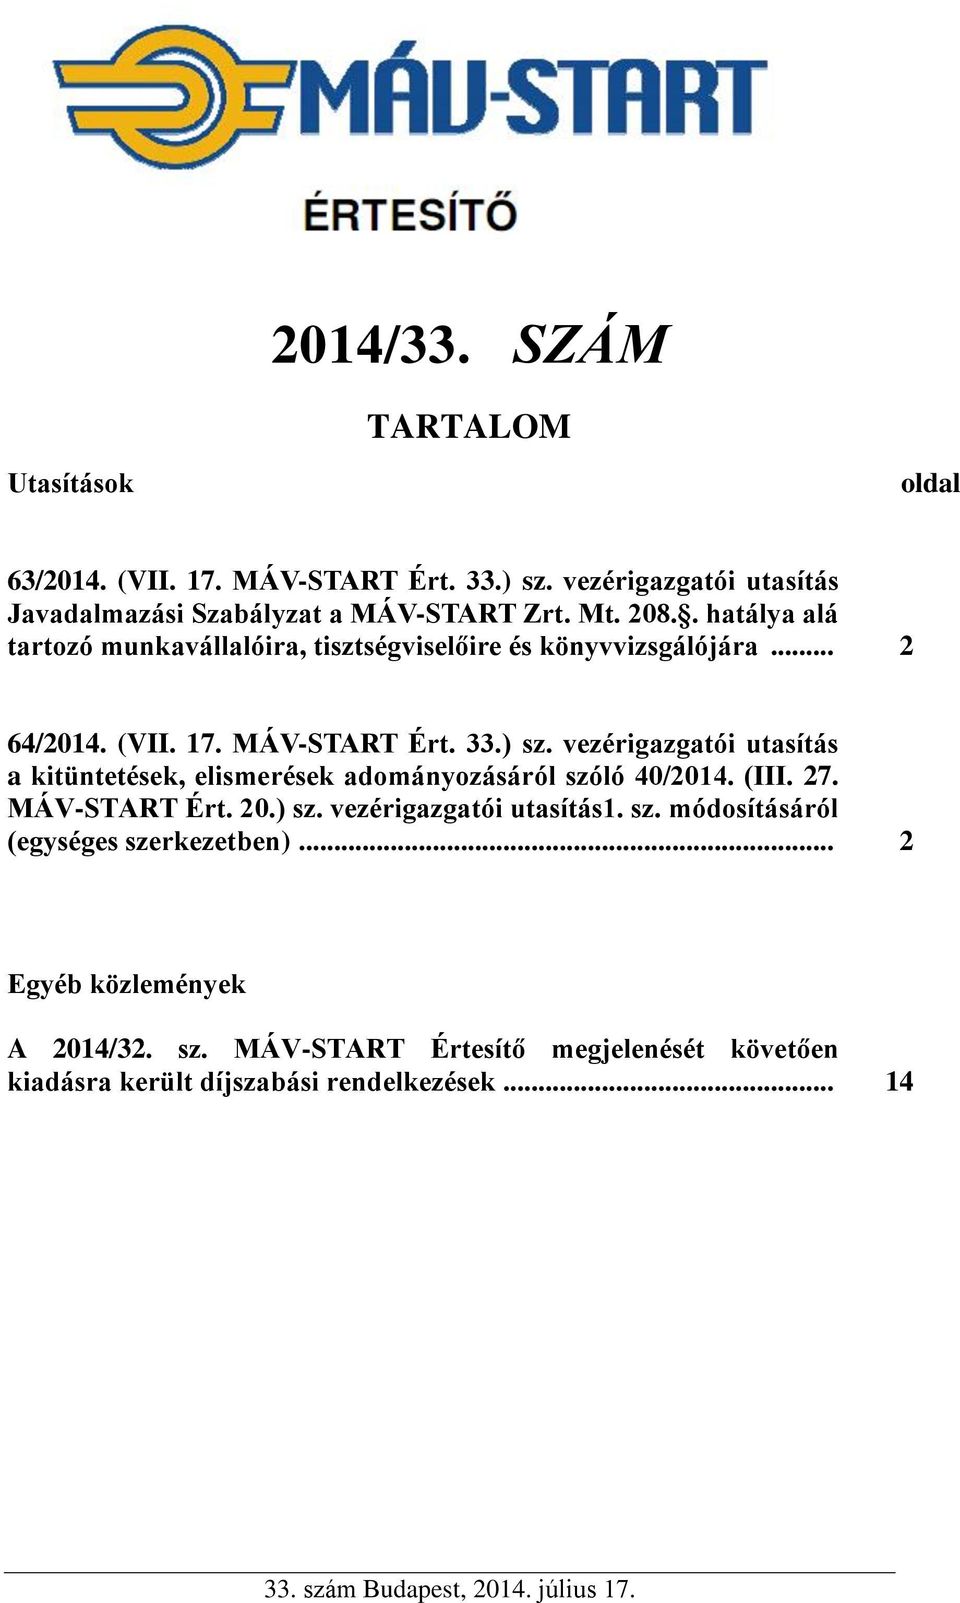 vezérigazgatói utasítás a kitüntetések, elismerések adományozásáról szóló 40/2014. (III. 27. MÁV-START Ért. 20.) sz. vezérigazgatói utasítás1. sz. módosításáról (egységes szerkezetben).